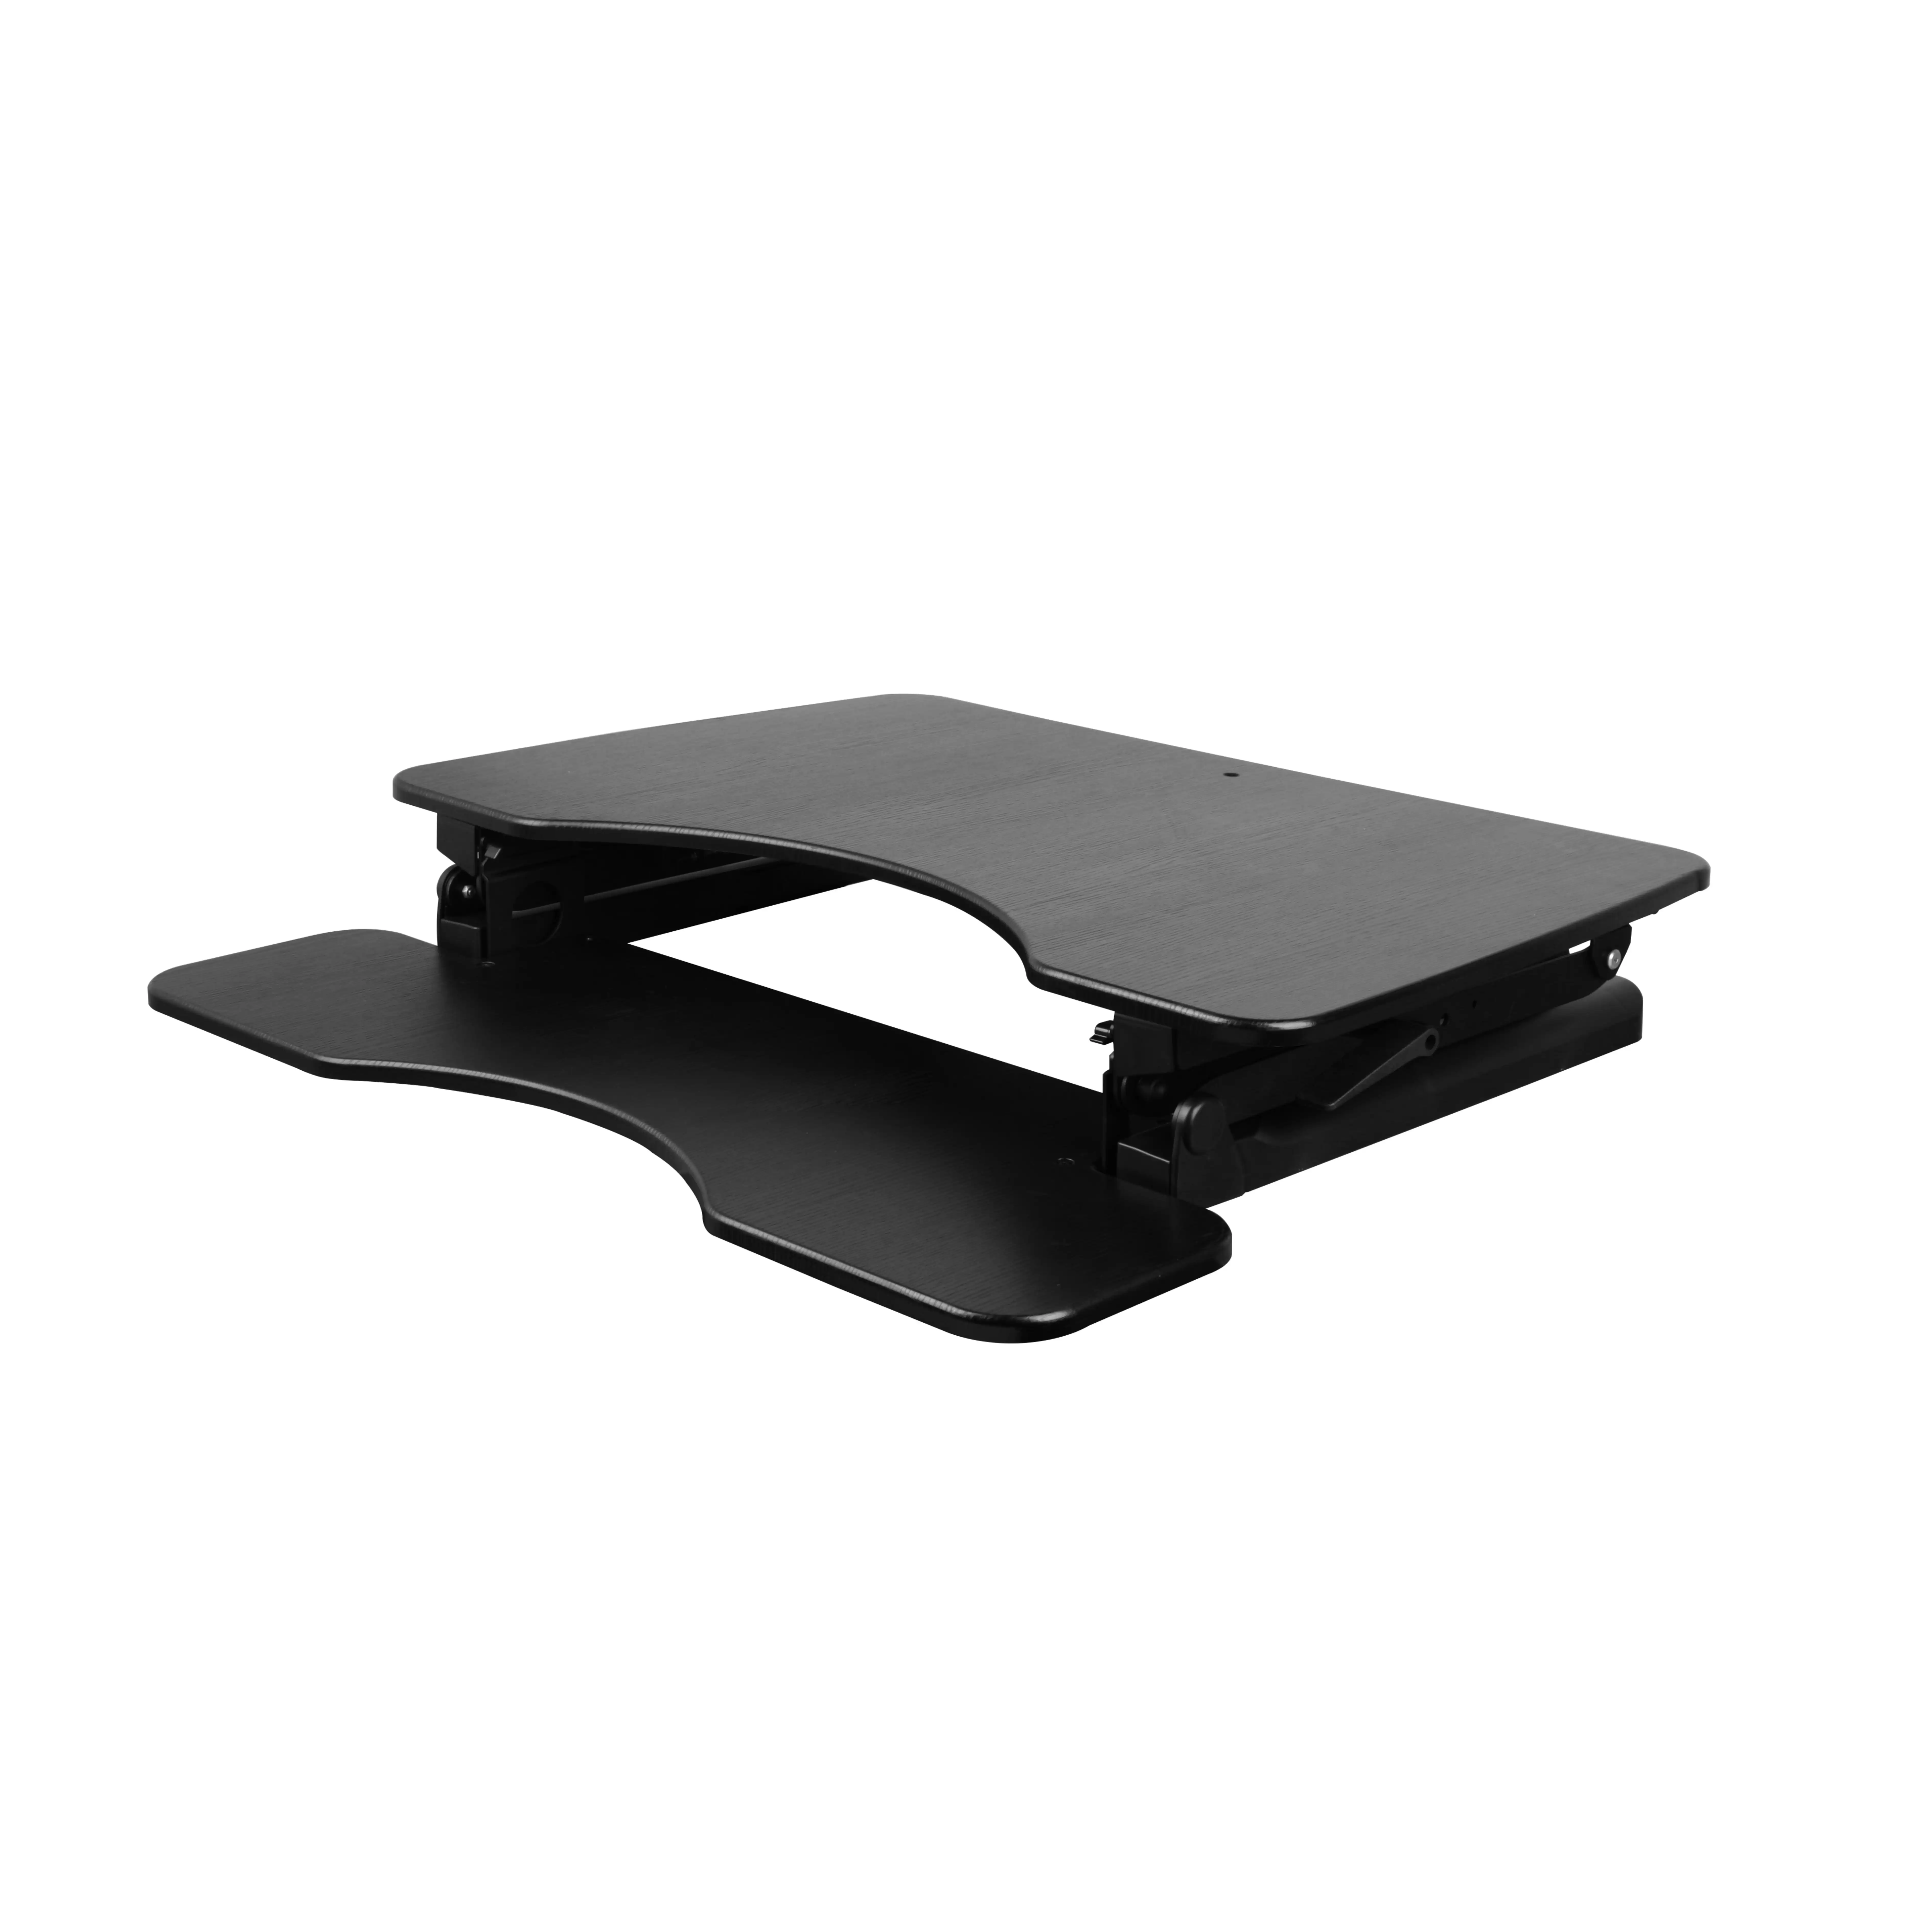 SSW100D-escritorio ergonómico para oficina, soporte para estación de trabajo, altura ajustable, soporte para sentarse